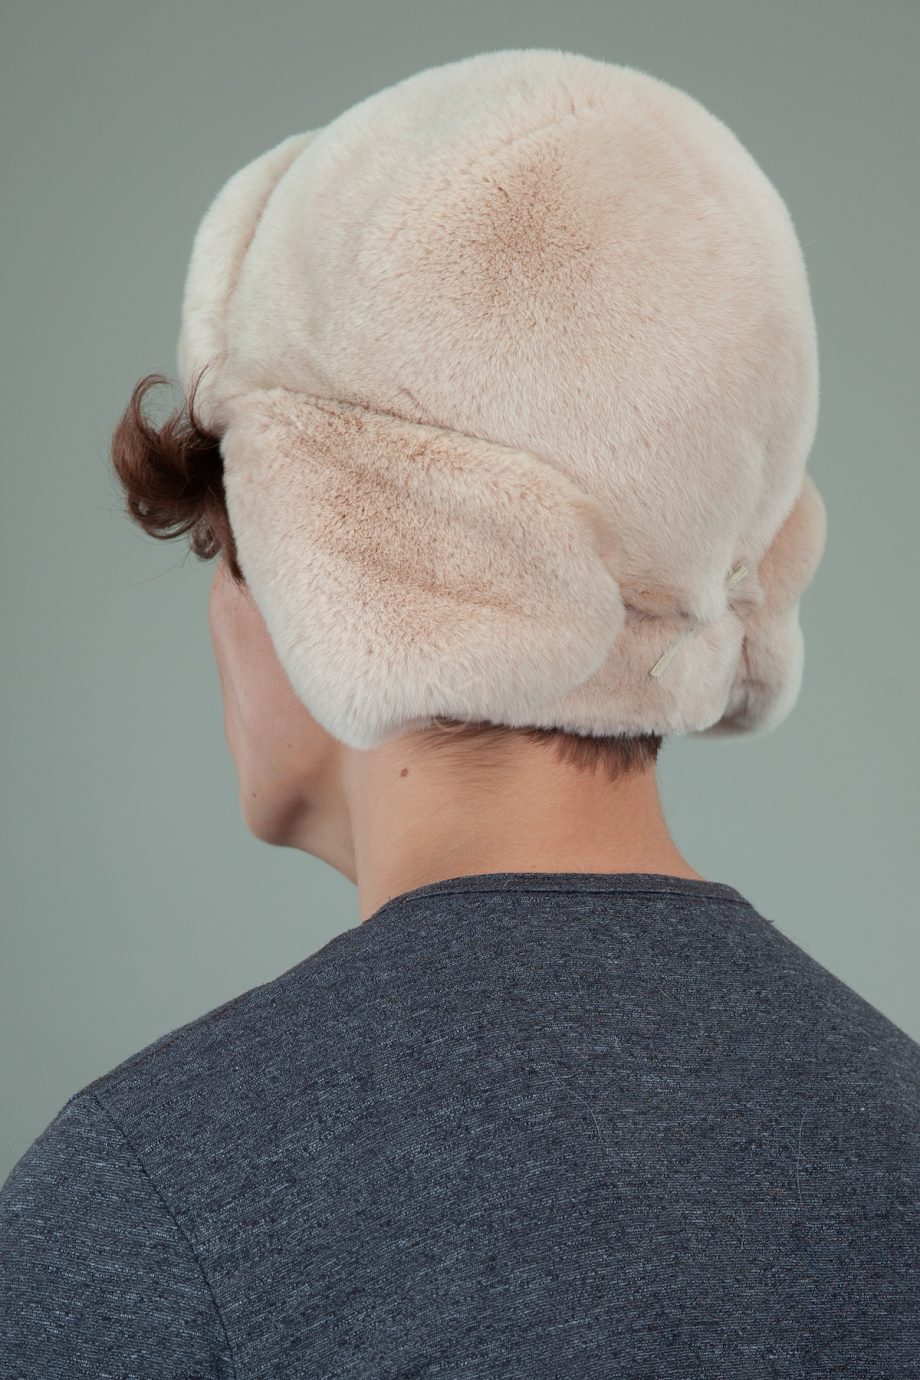 biezinio rekso triusio kailio kepure su surisamomis ausimis moterims